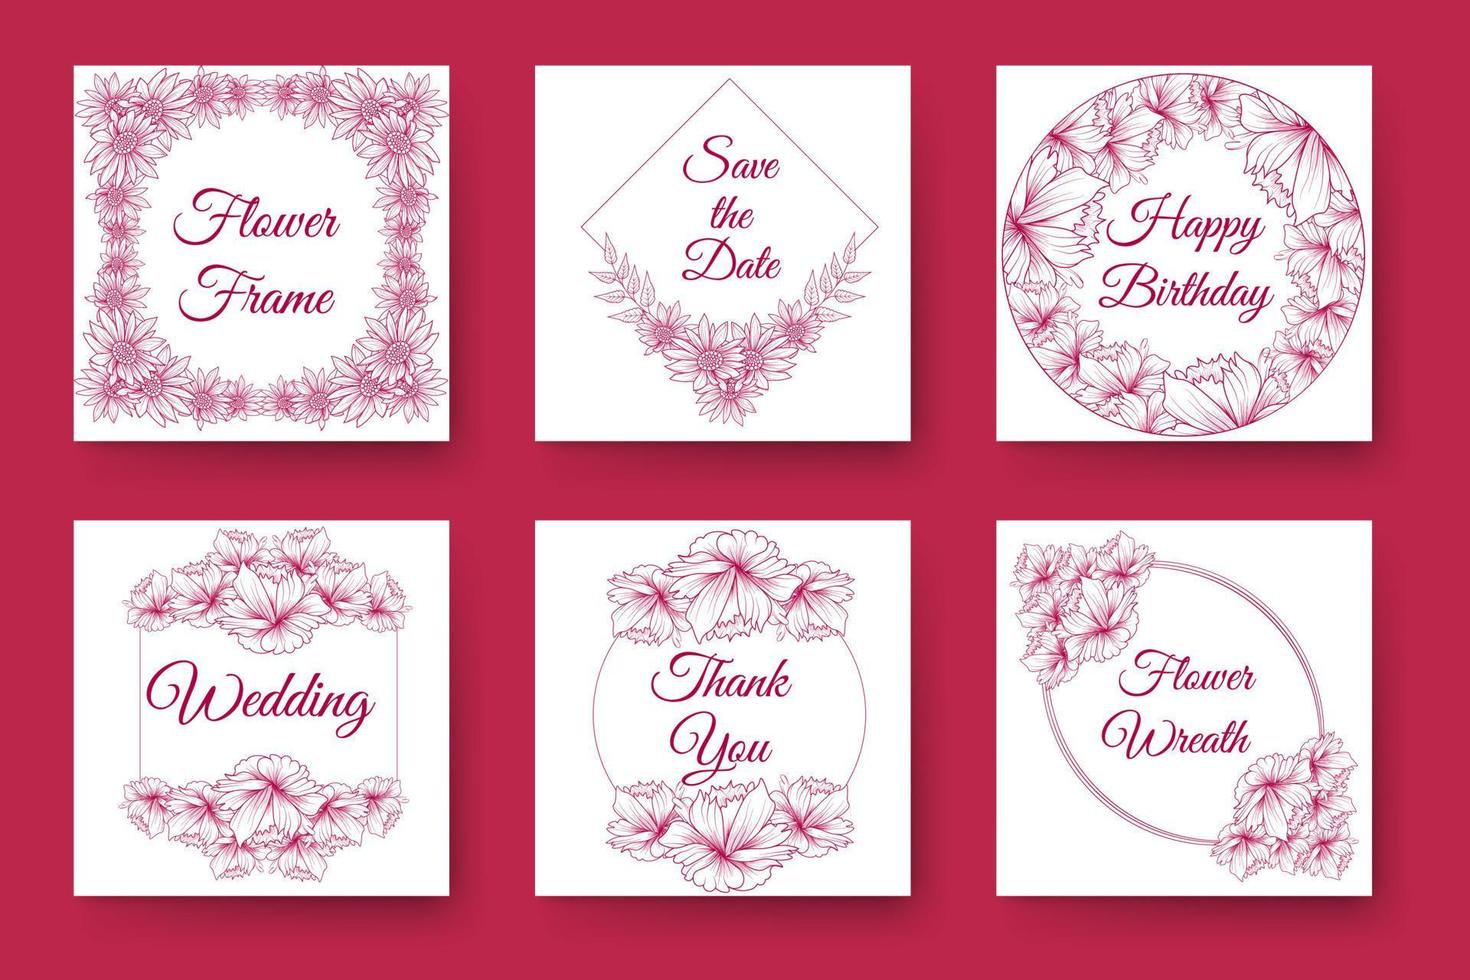 diseño de corona de flores y diseño de marco floral con elegante borde de flores de tarjeta de invitación de boda vector